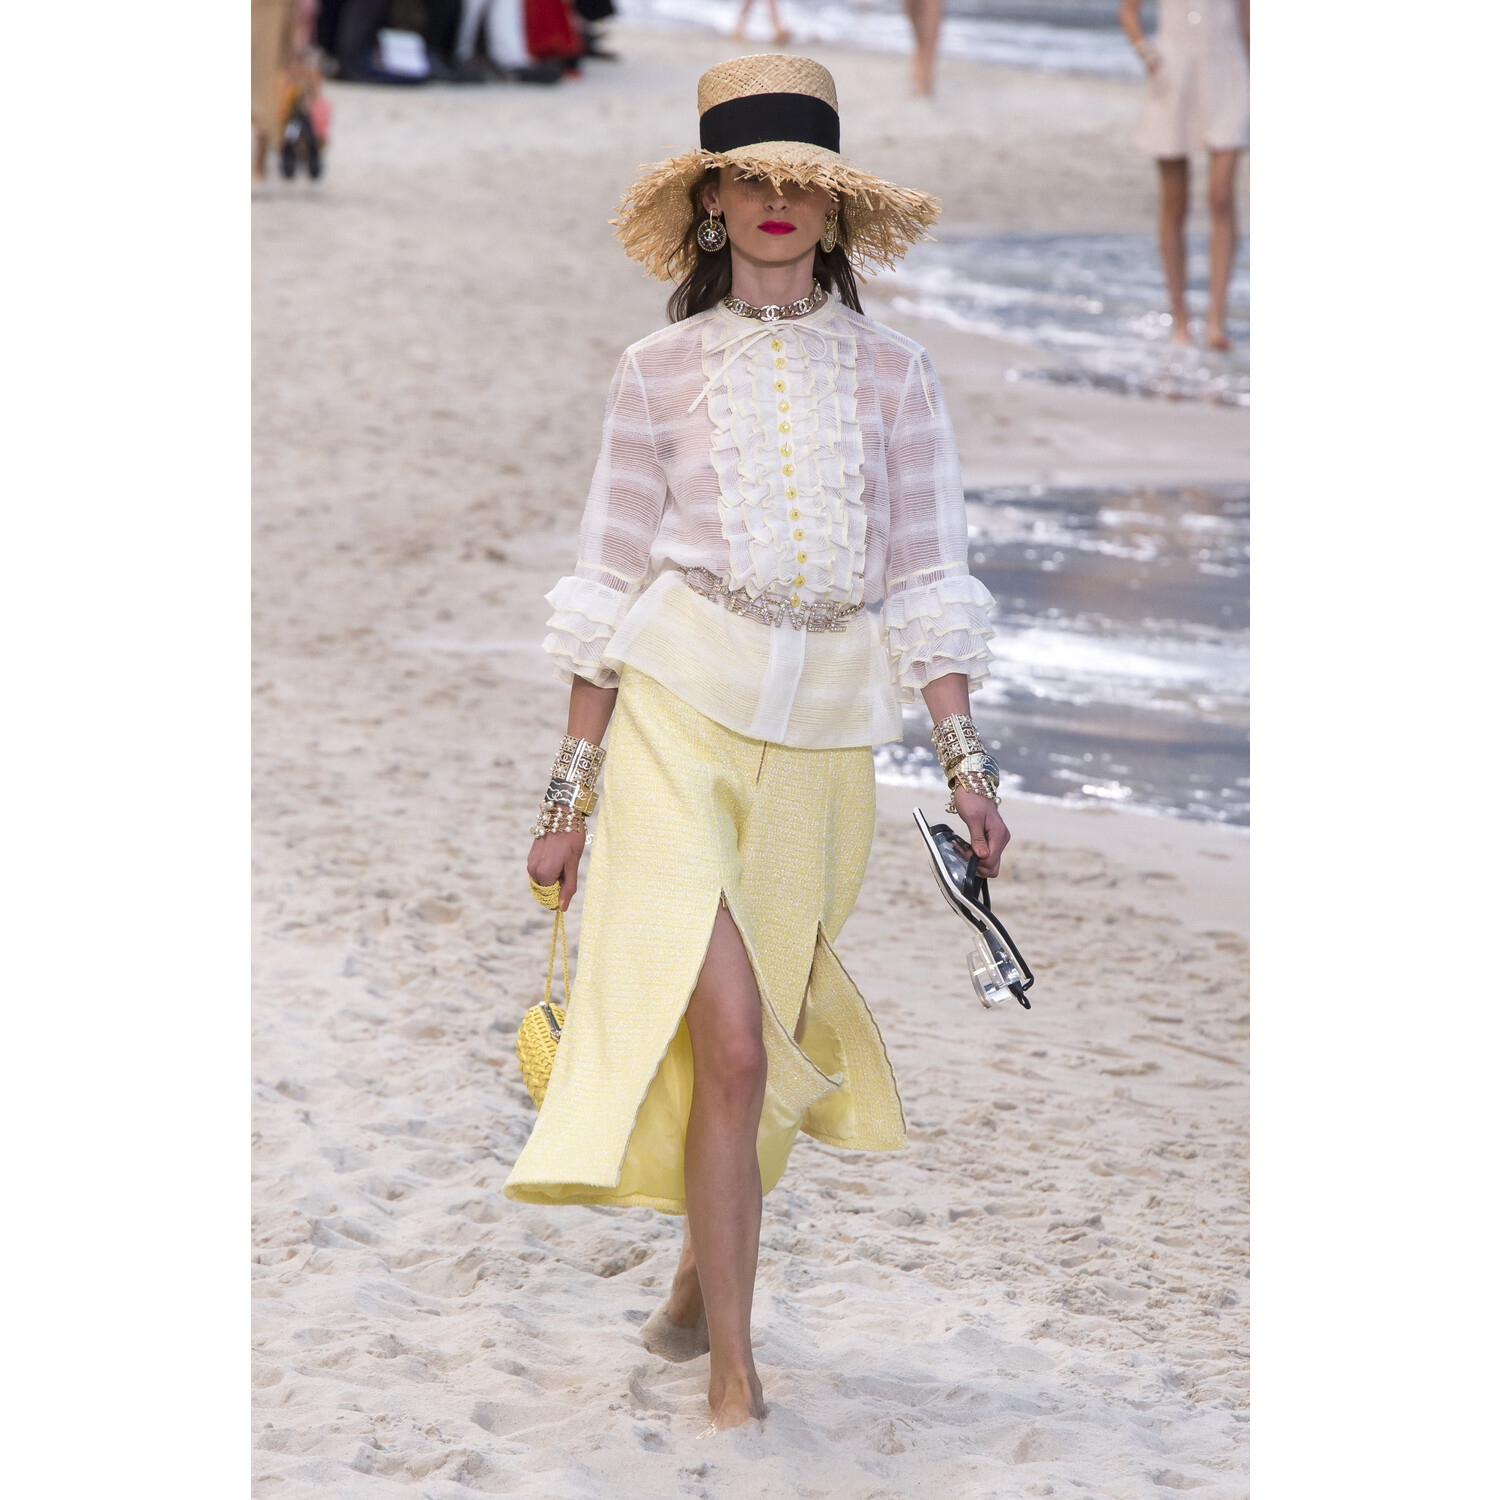 Фото Chanel Spring 2019 PFW / Шанель весна-лето 2019 Неделя моды в Париже